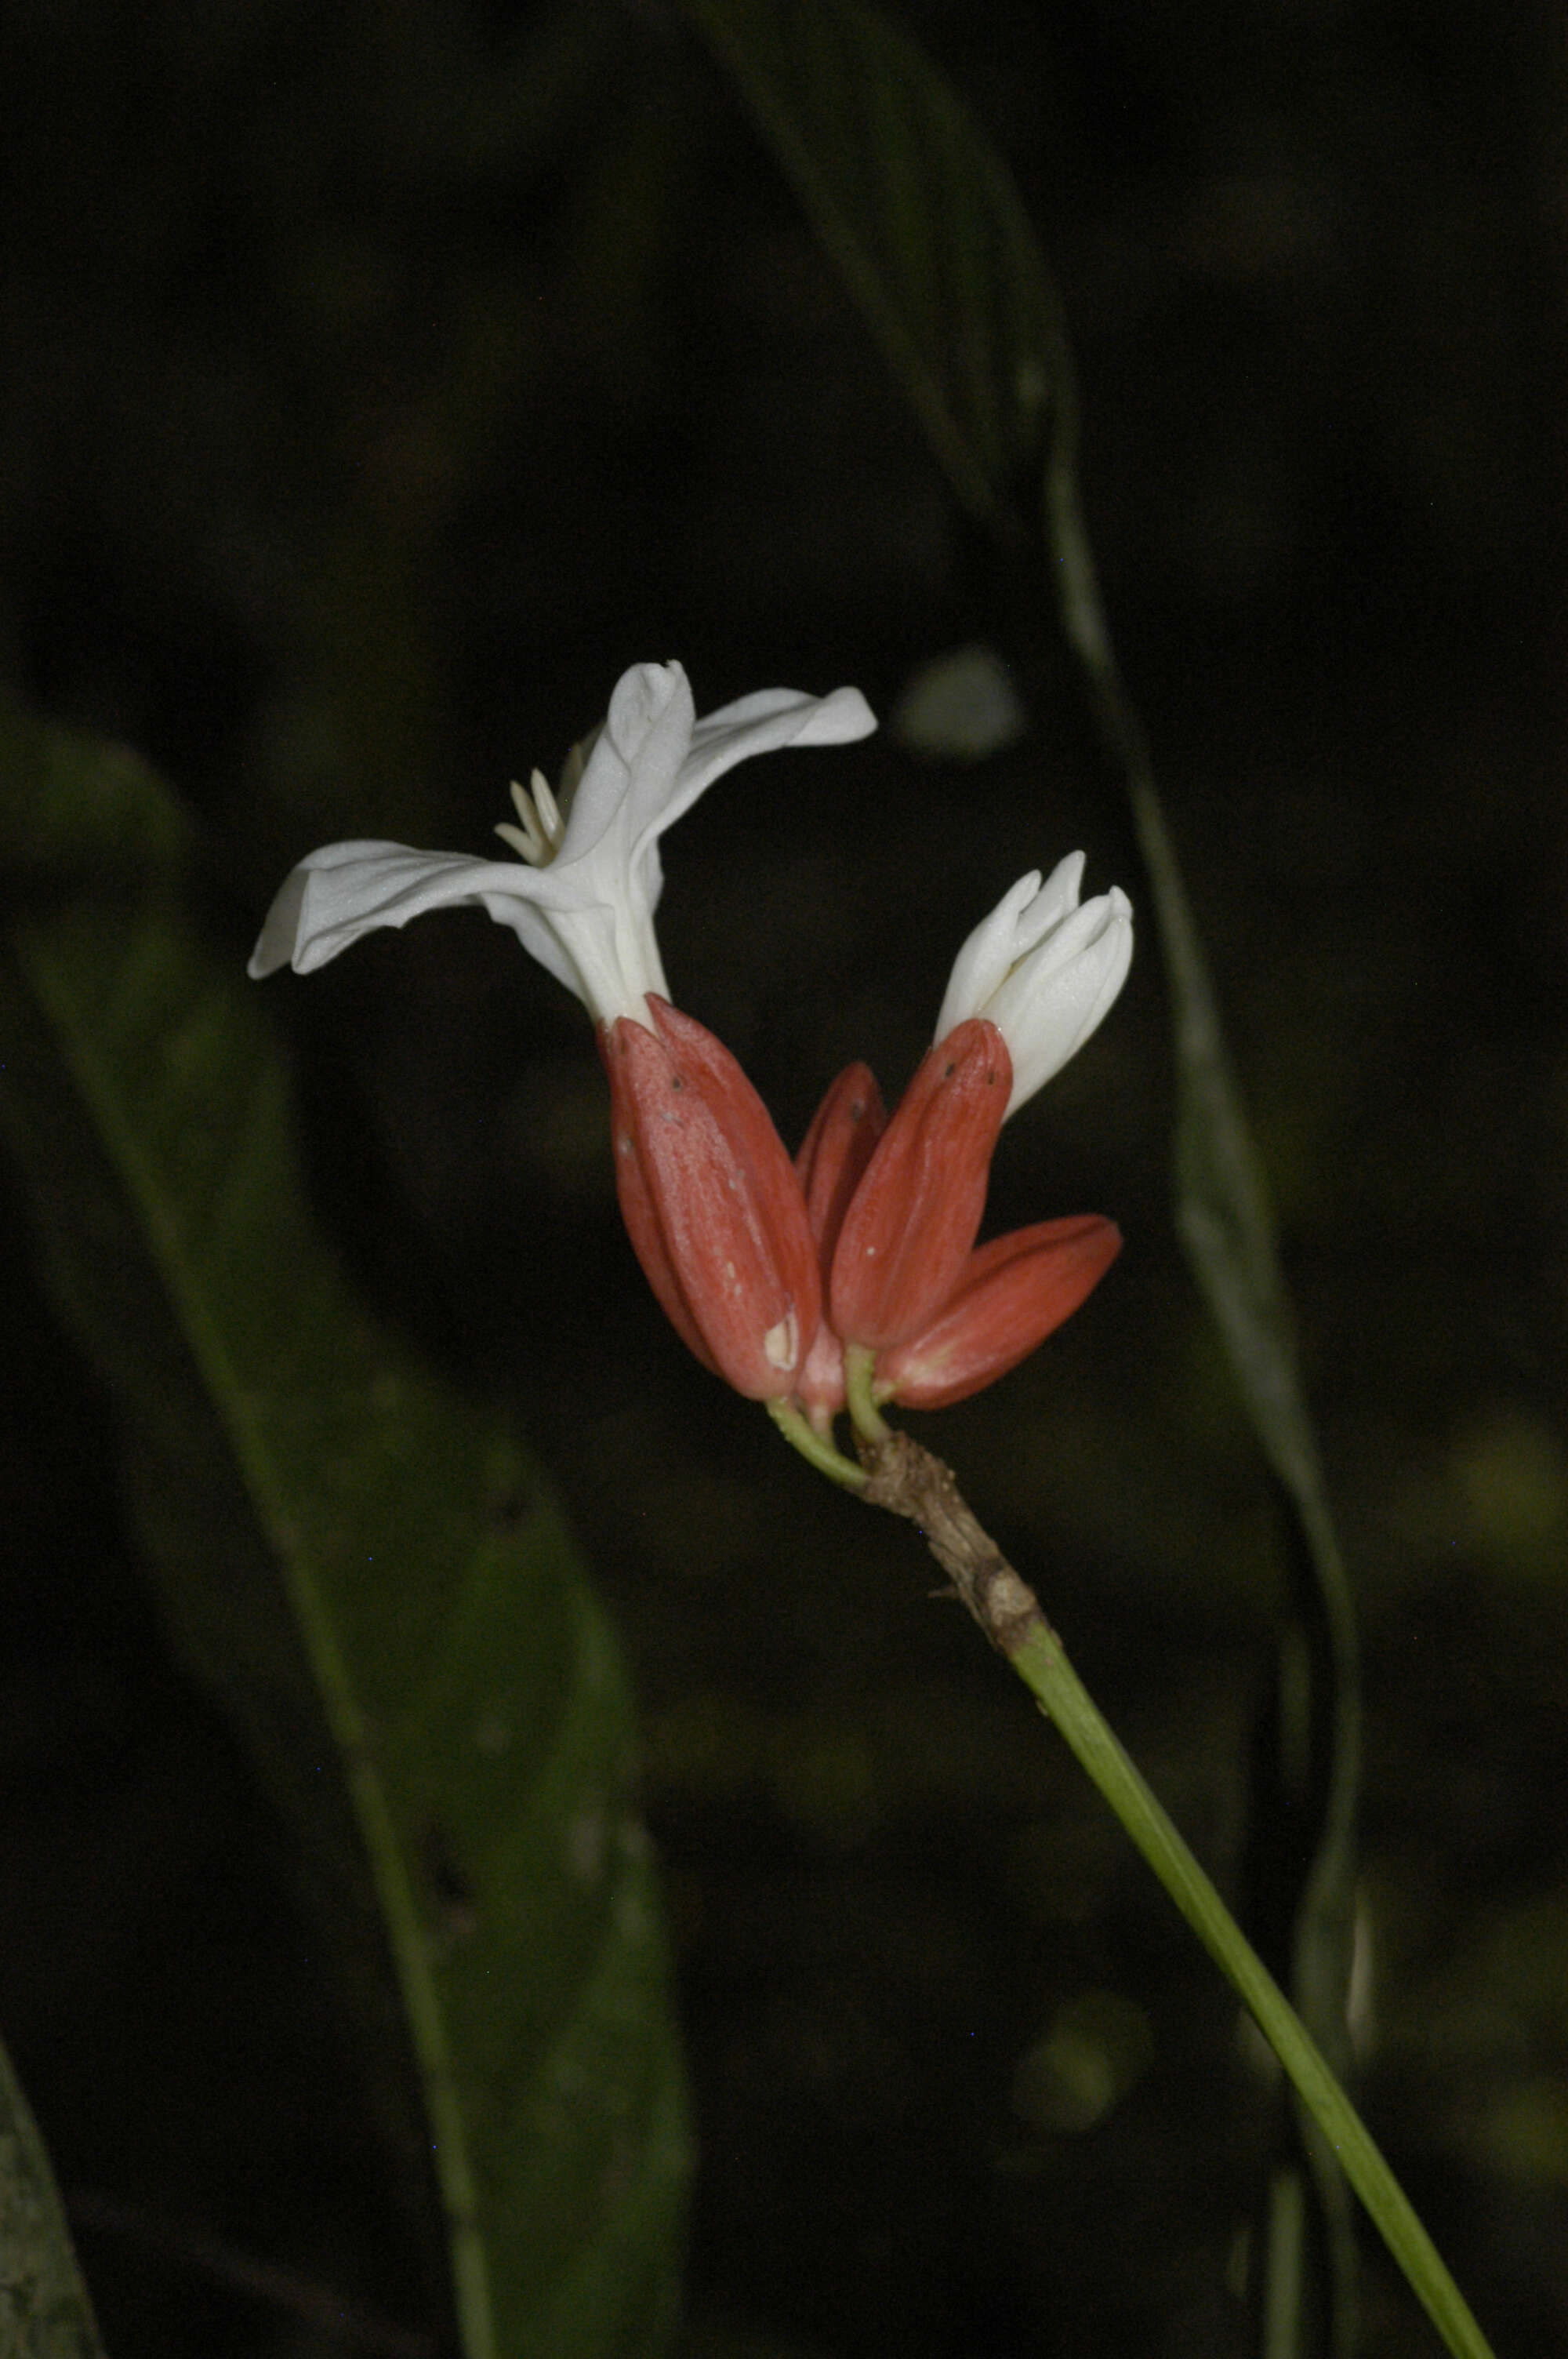 Image of Erythrochiton brasiliensis Nees & C. Martius